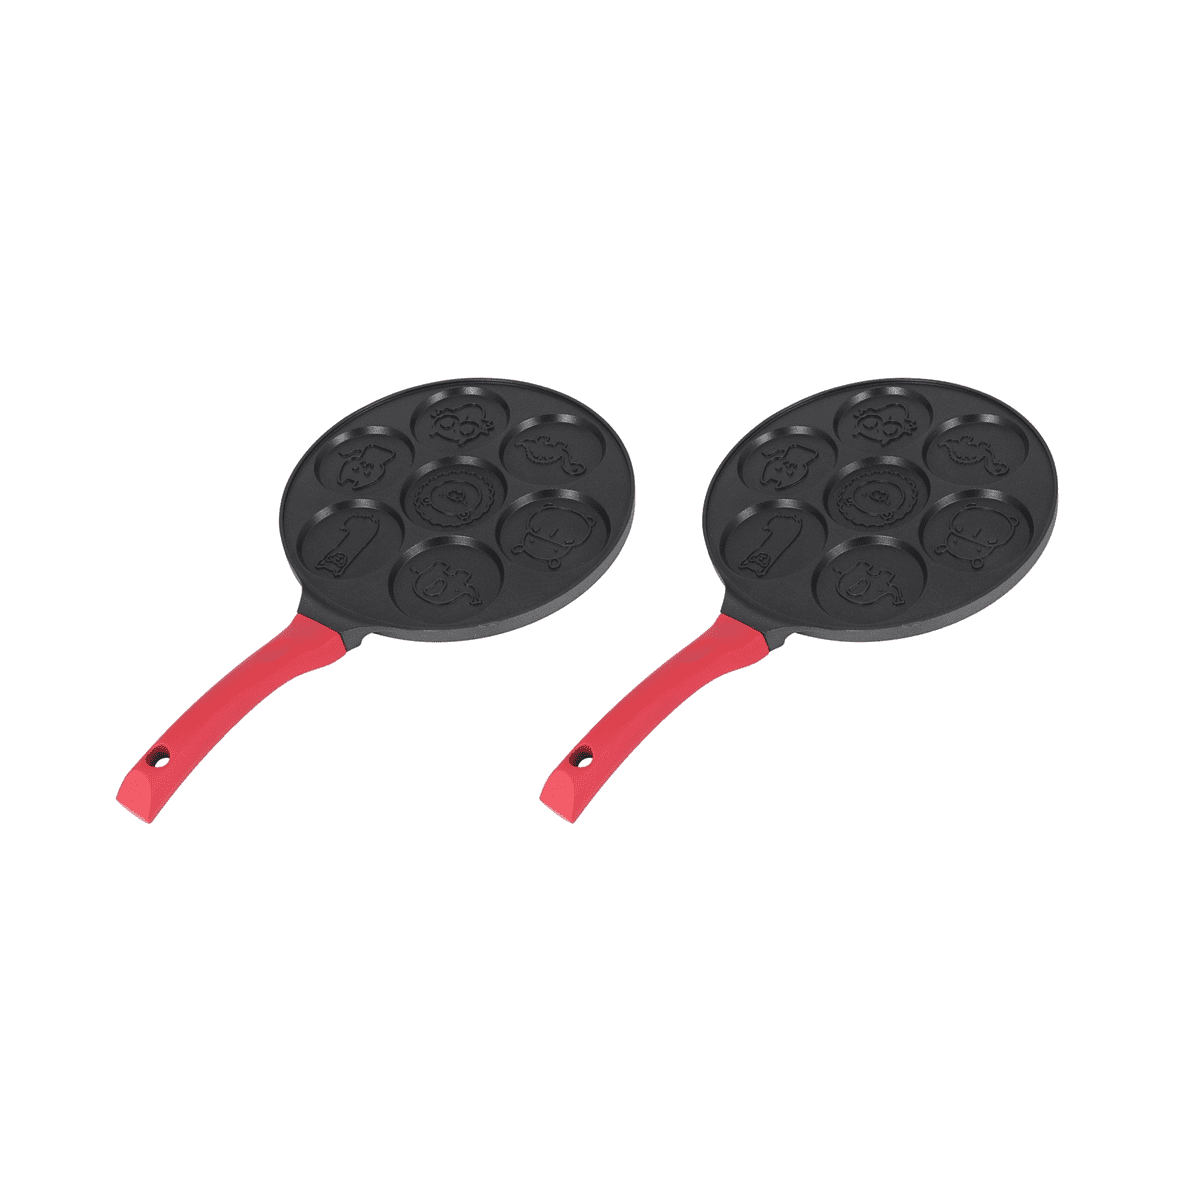 “Animal” Pancake Pan/crepe maker